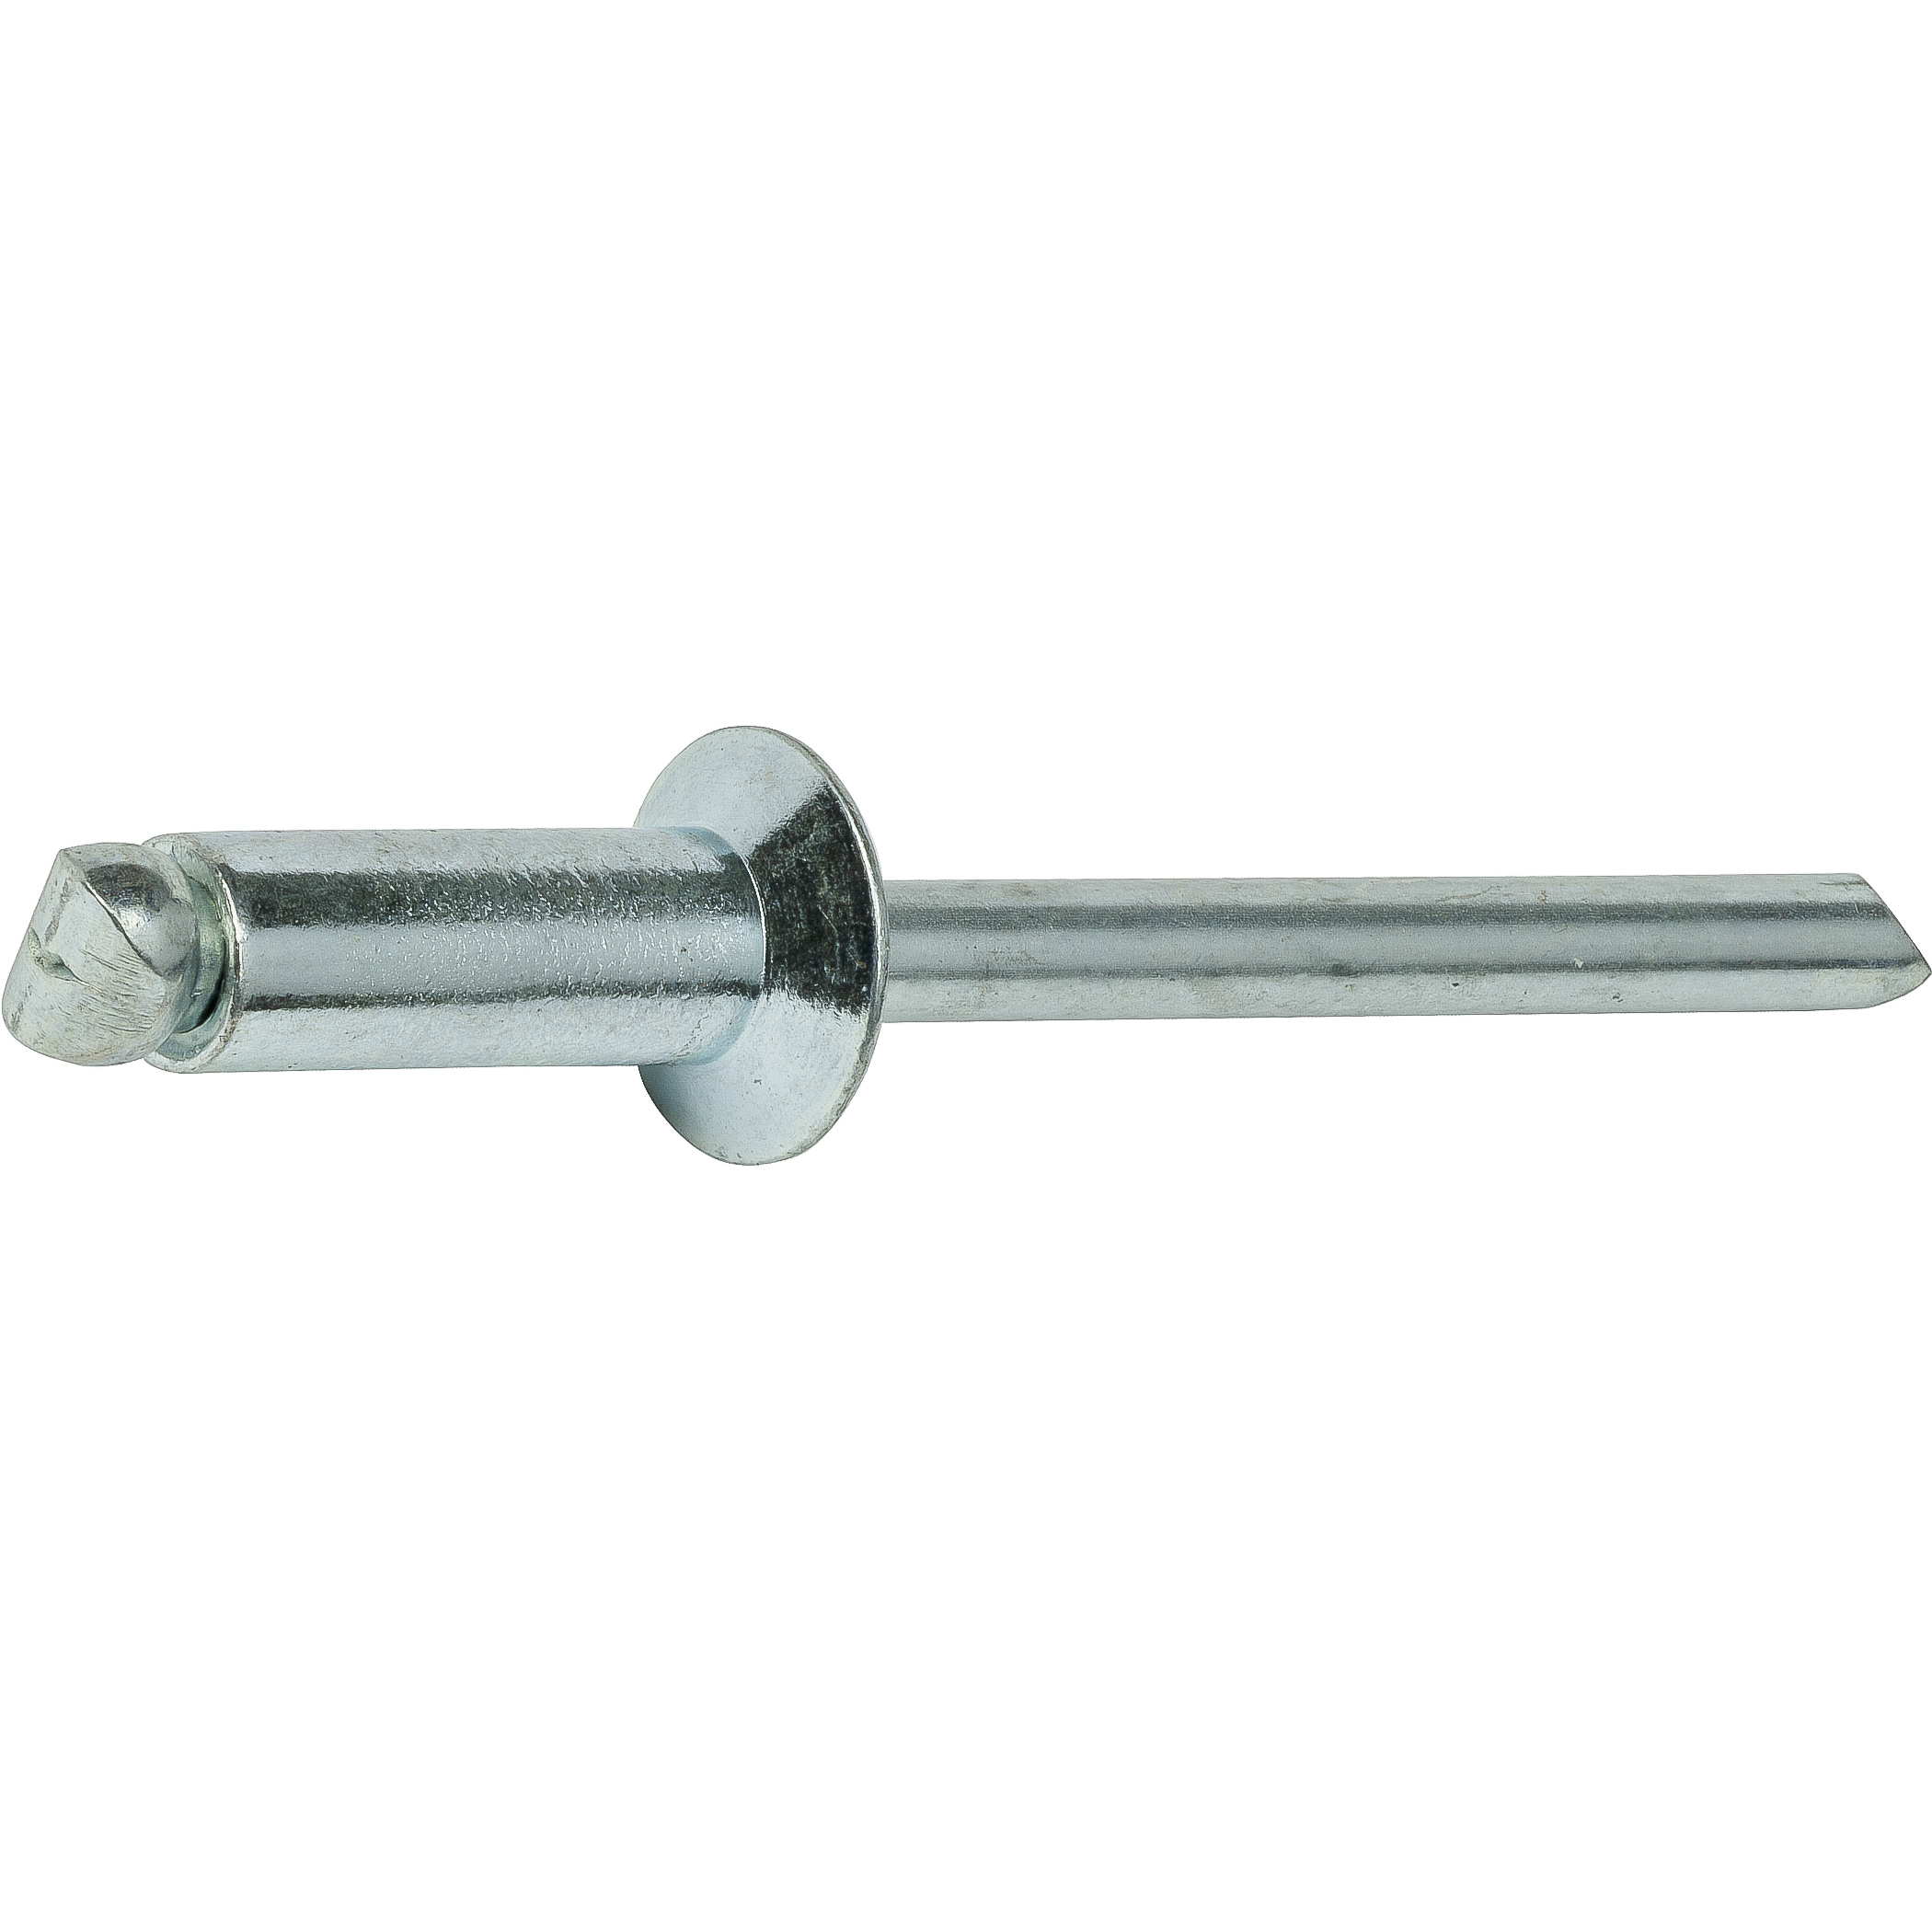 Aluminum Pop Rivets 3/16" x 1/4" Steel Mandrel Flat Countersunk Head Qty 100